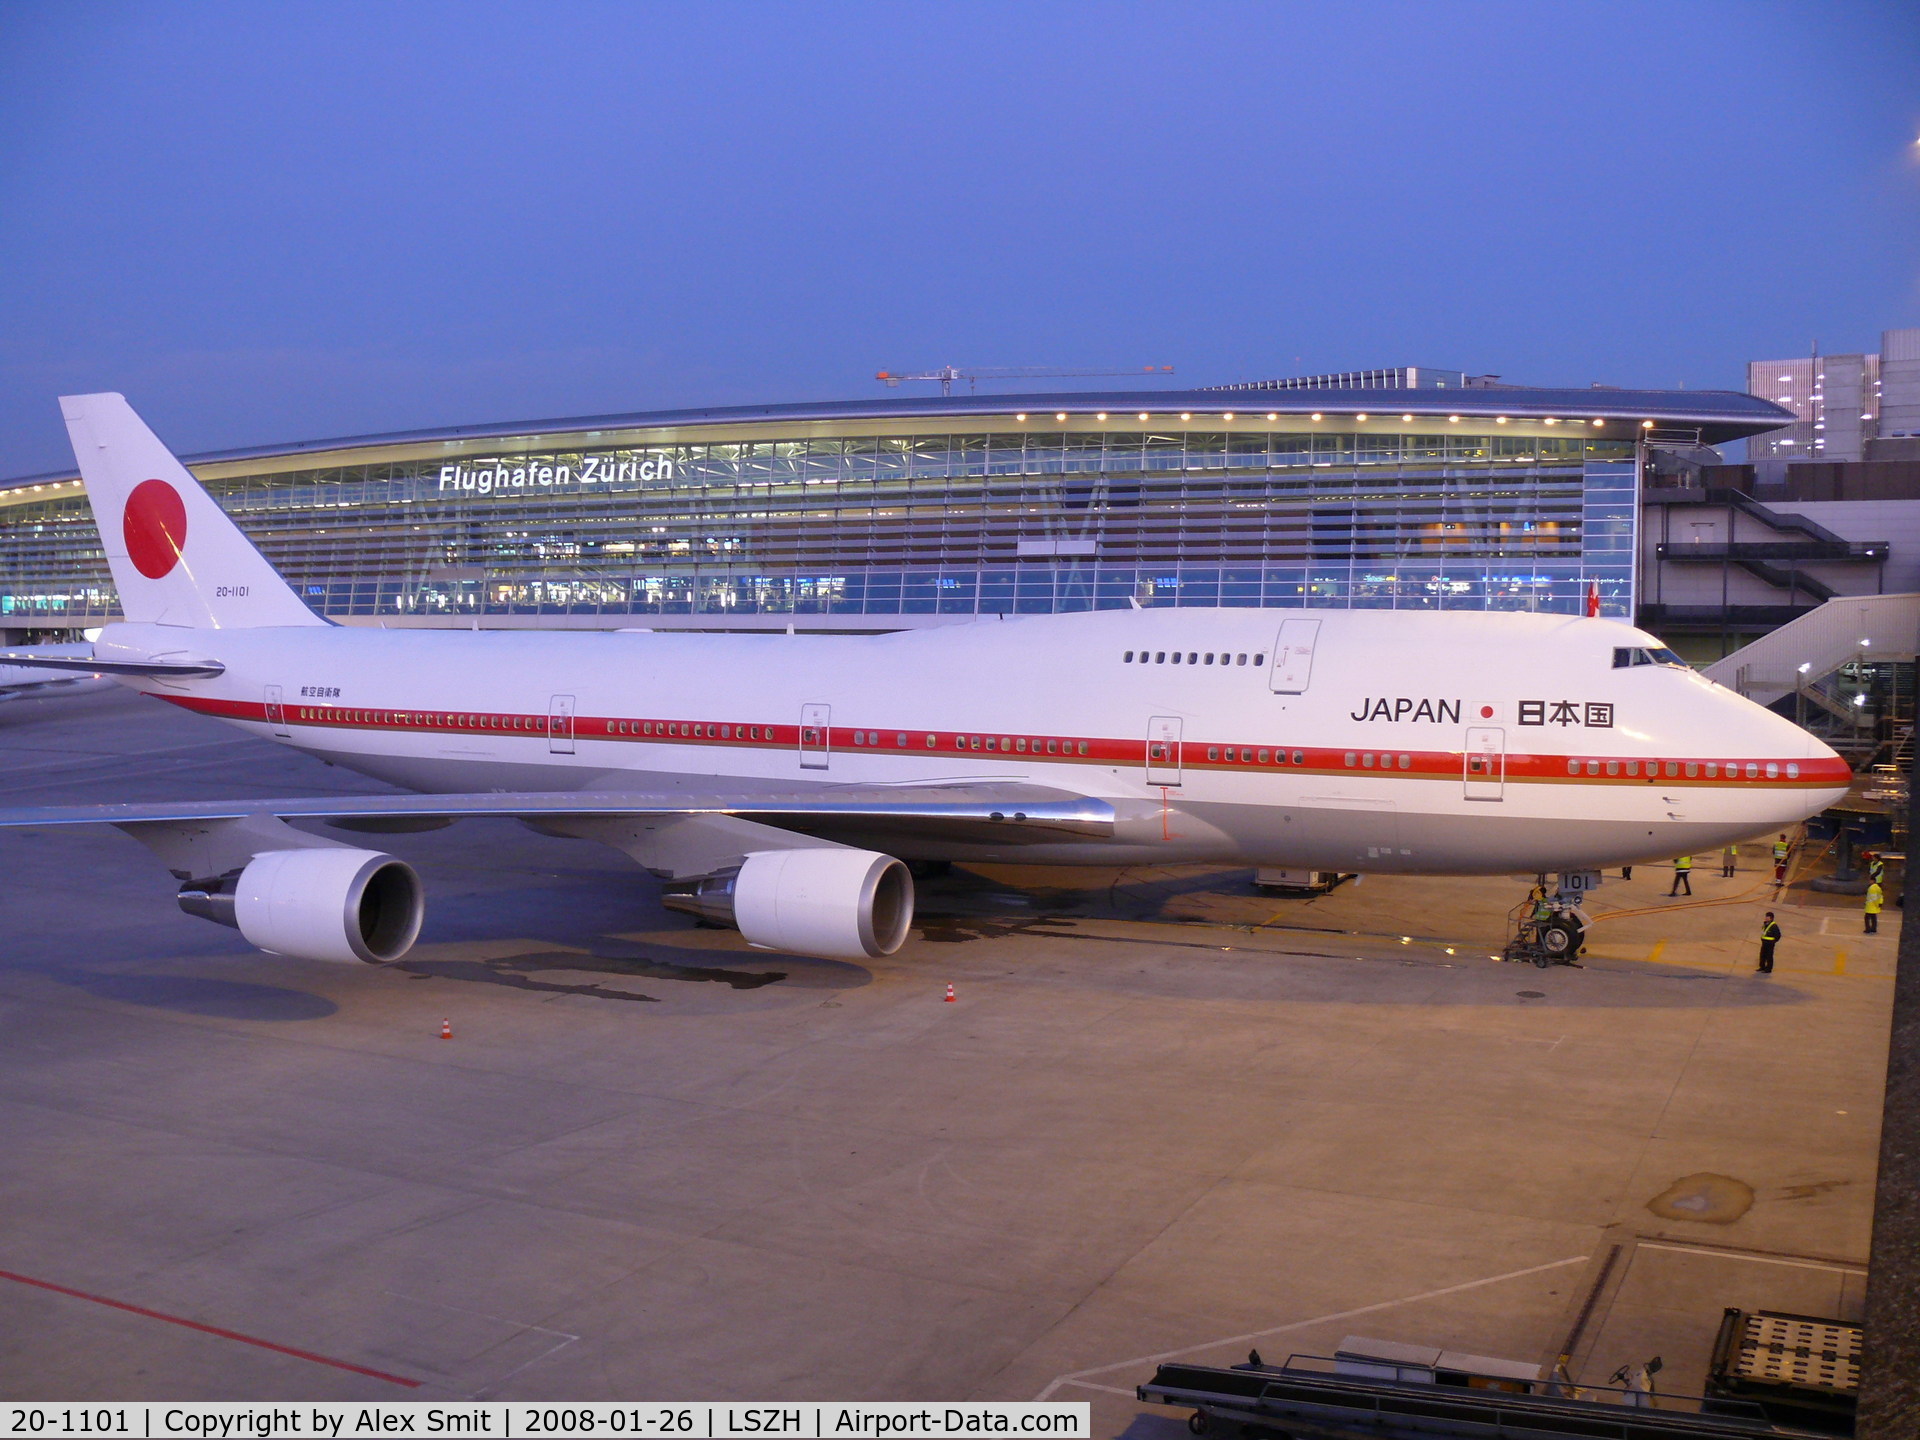 20-1101, 1990 Boeing 747-47C C/N 24730, JASDF Jumbo 20-1101 parked at Zürich